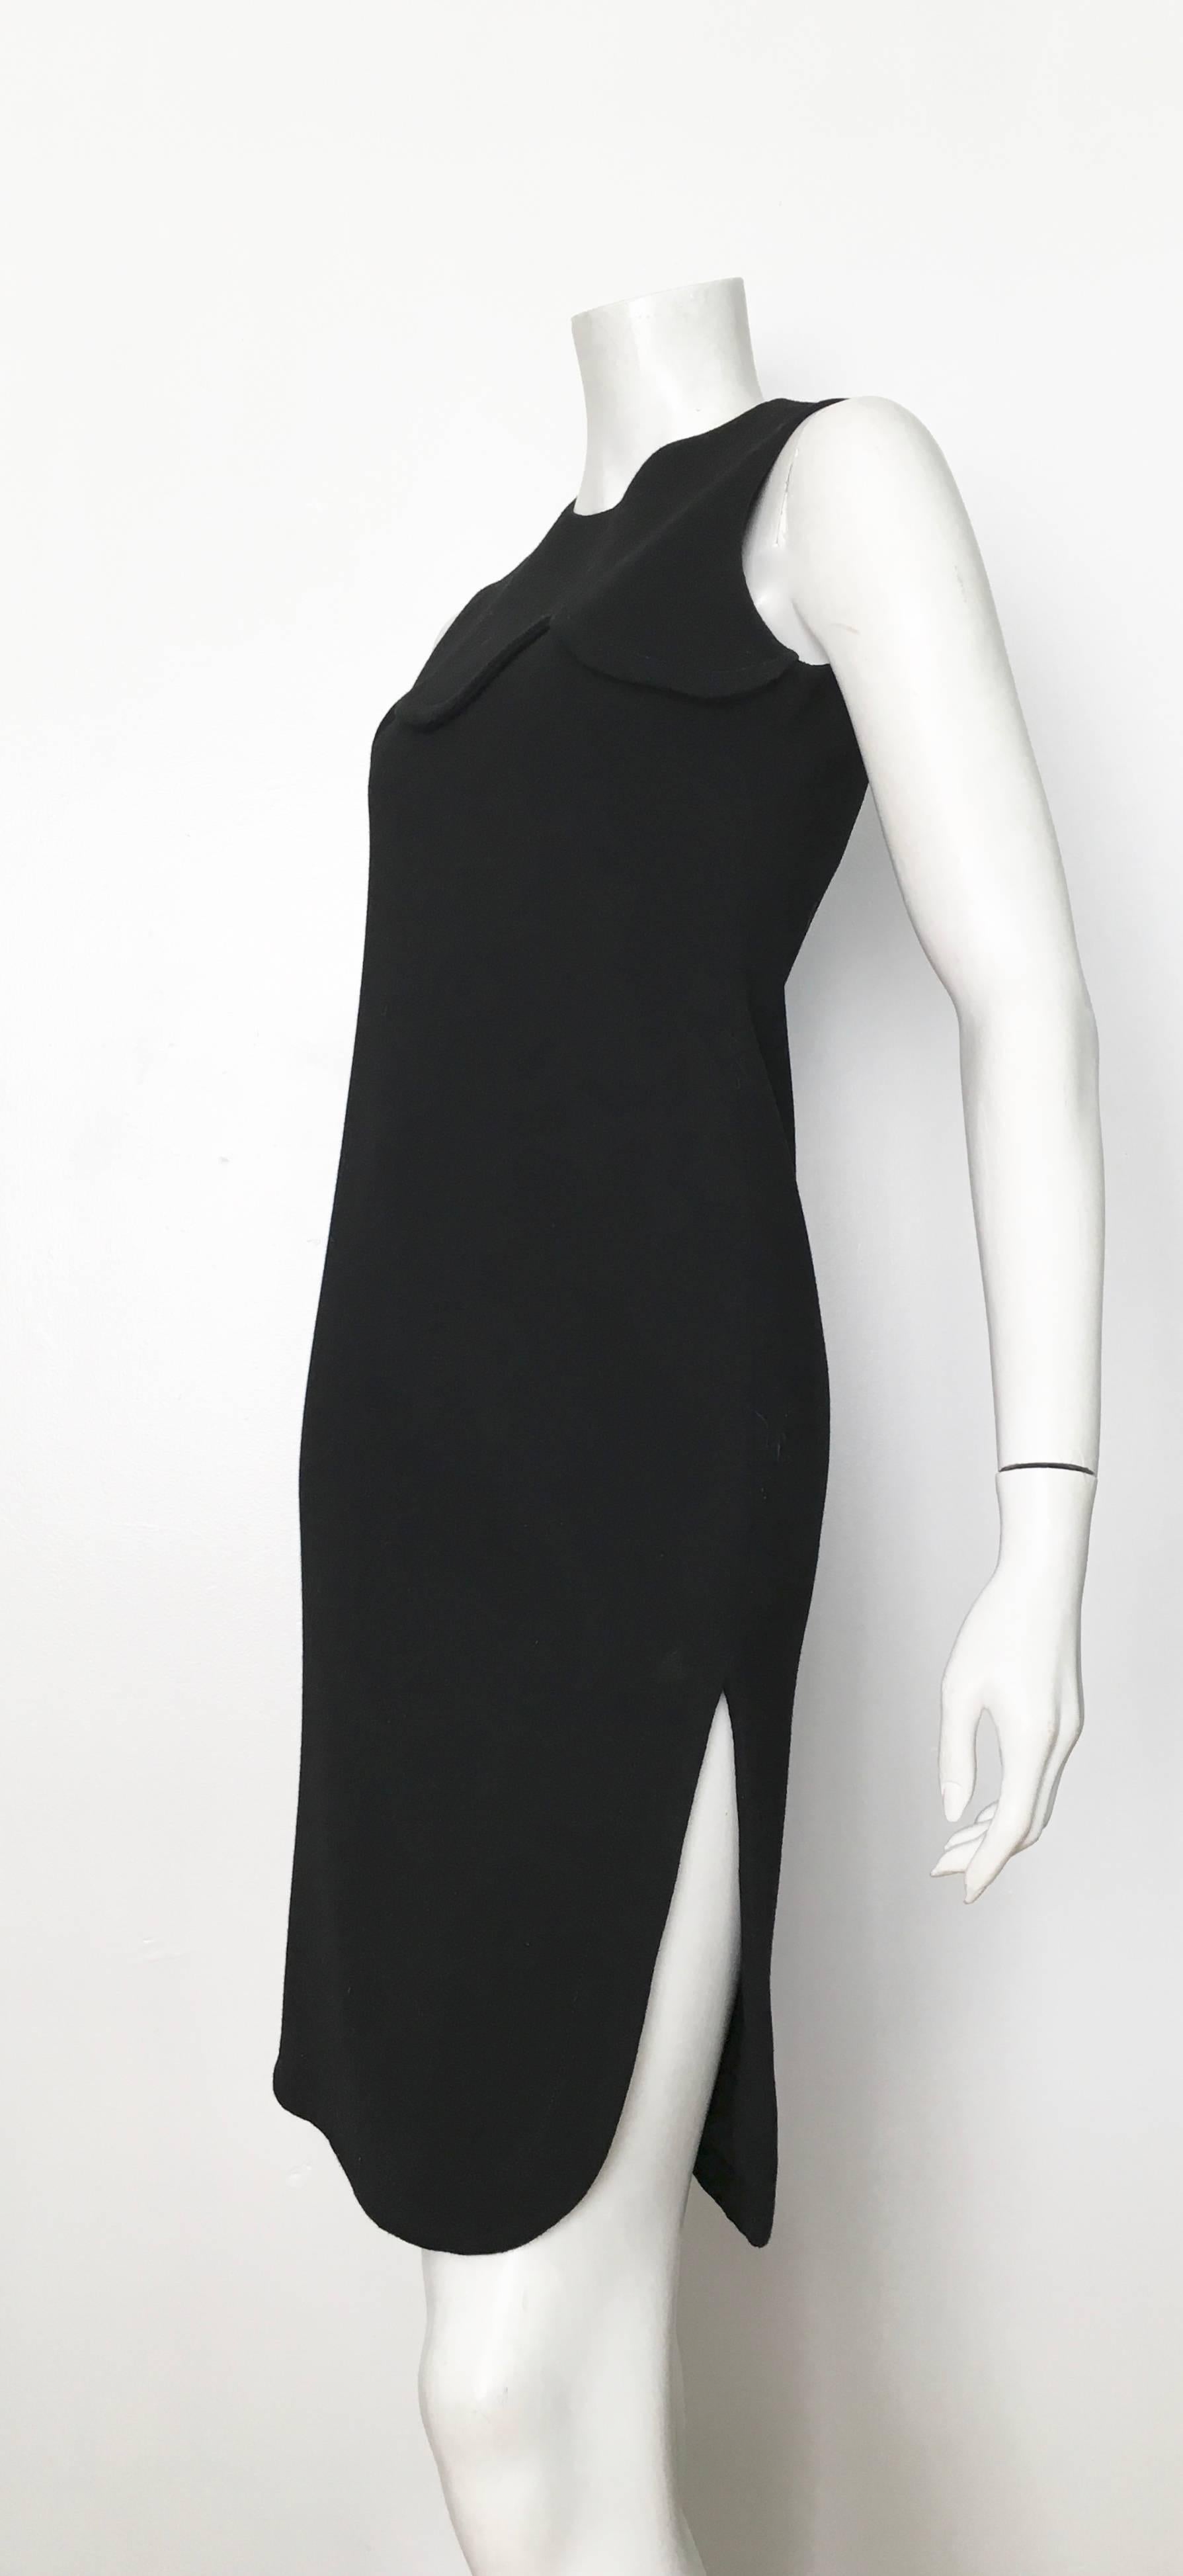 Pierre Cardin for Saks Fifth Avenue 1971 Black Wool Sleeveless Dress Size 6. 10